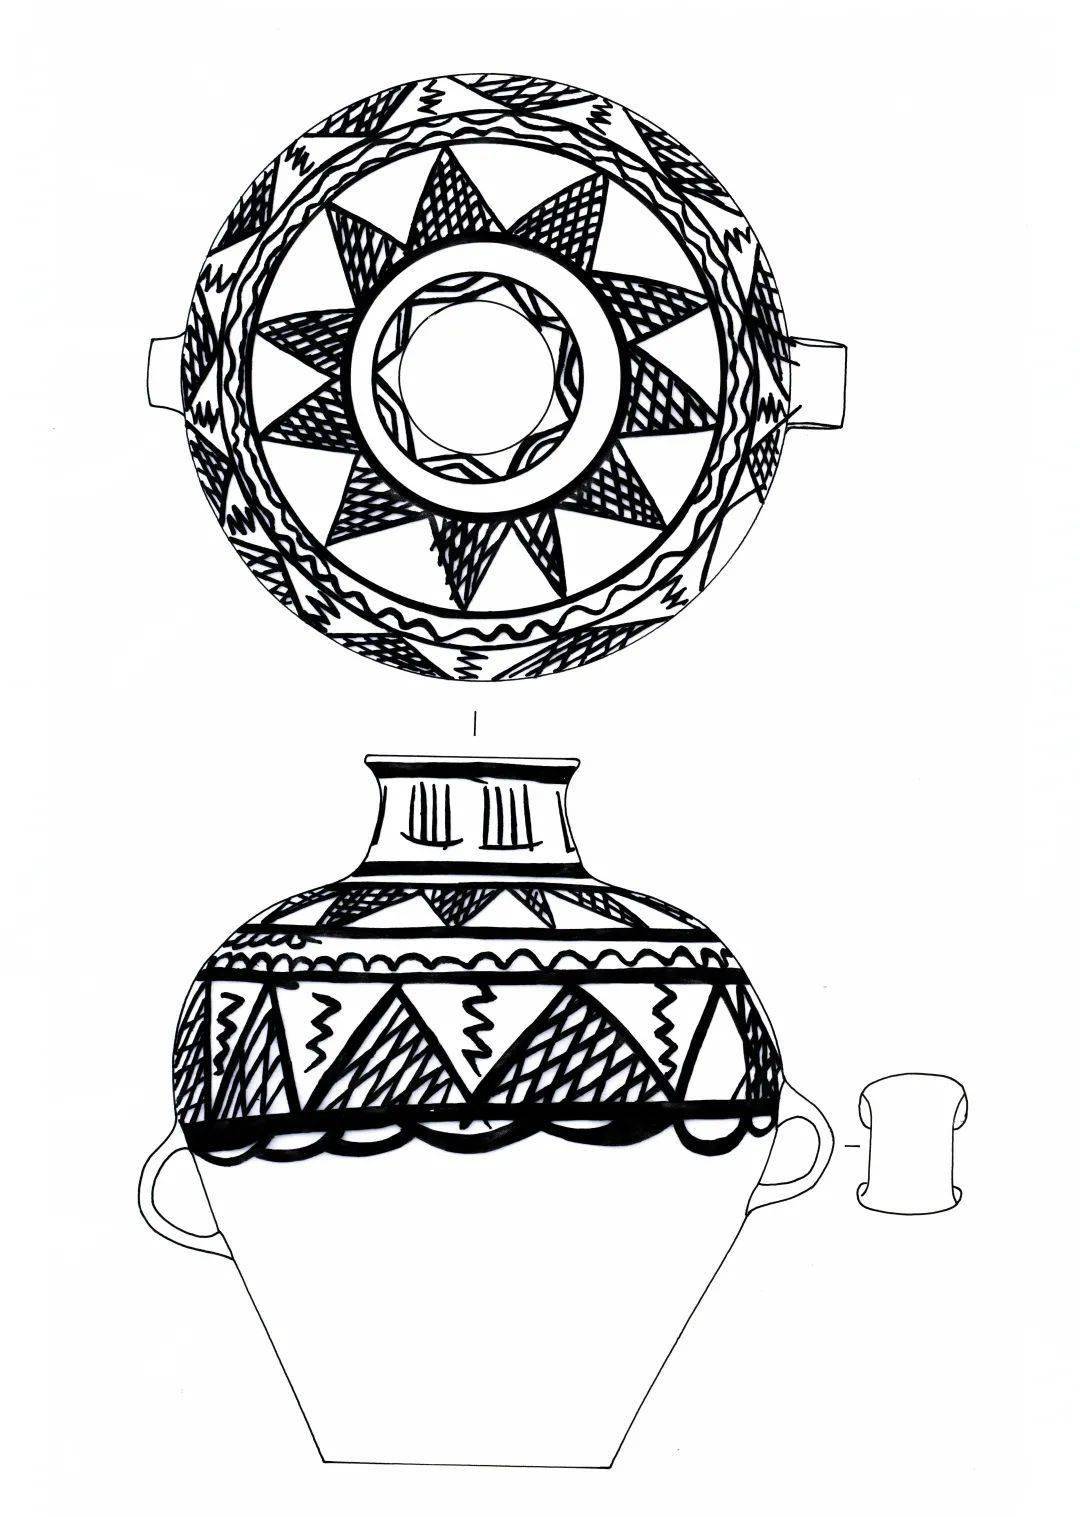 在一部分彩陶的腹部还发现了一些神秘的符号,有的像简单的文字,有的则